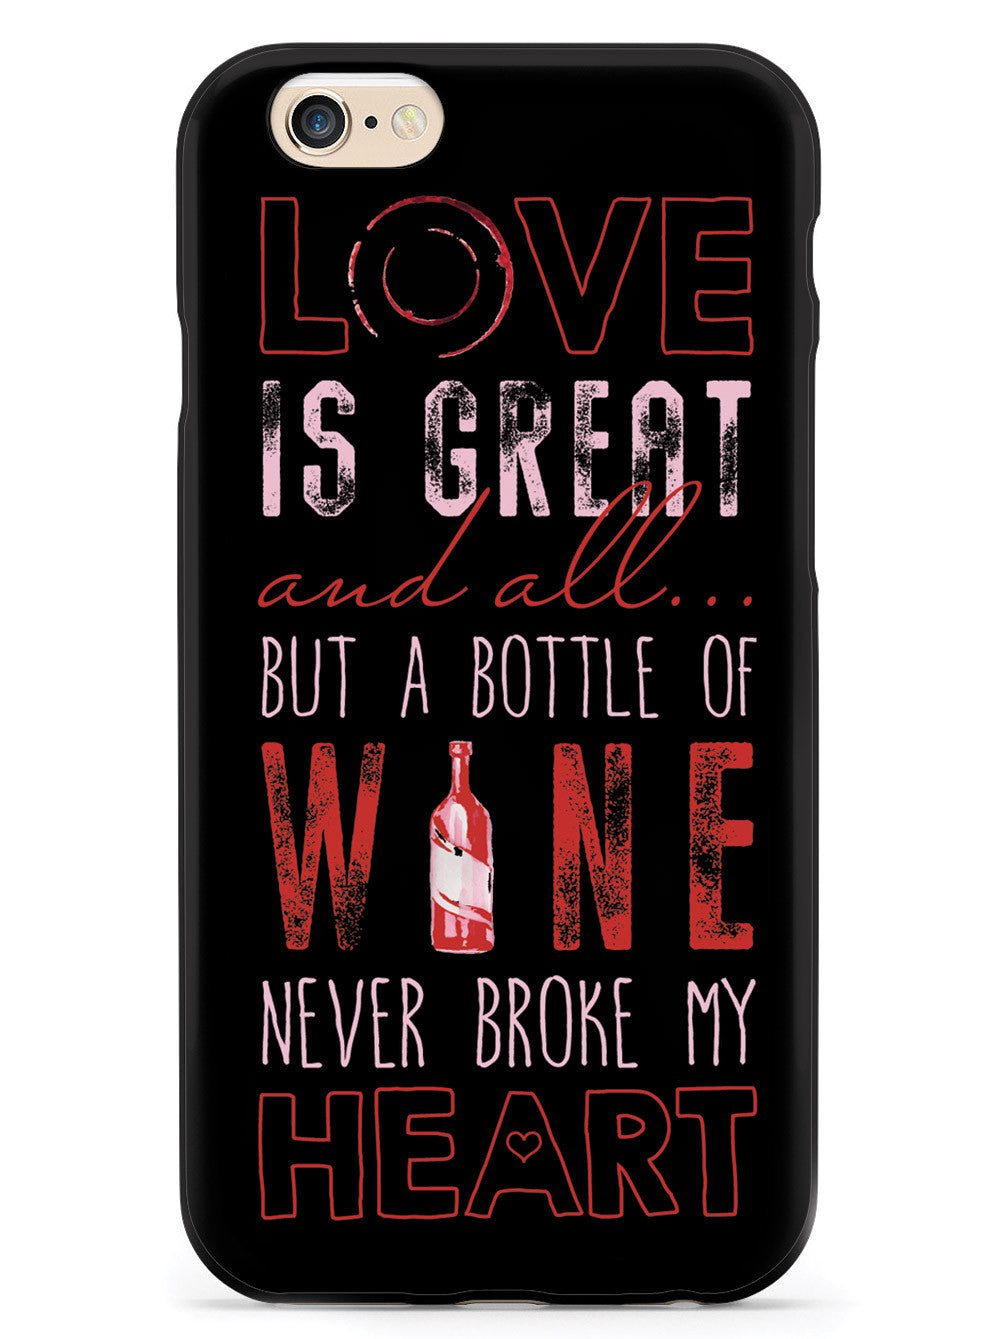 A Bottle of Wine Never Broke My Heart - Black Case